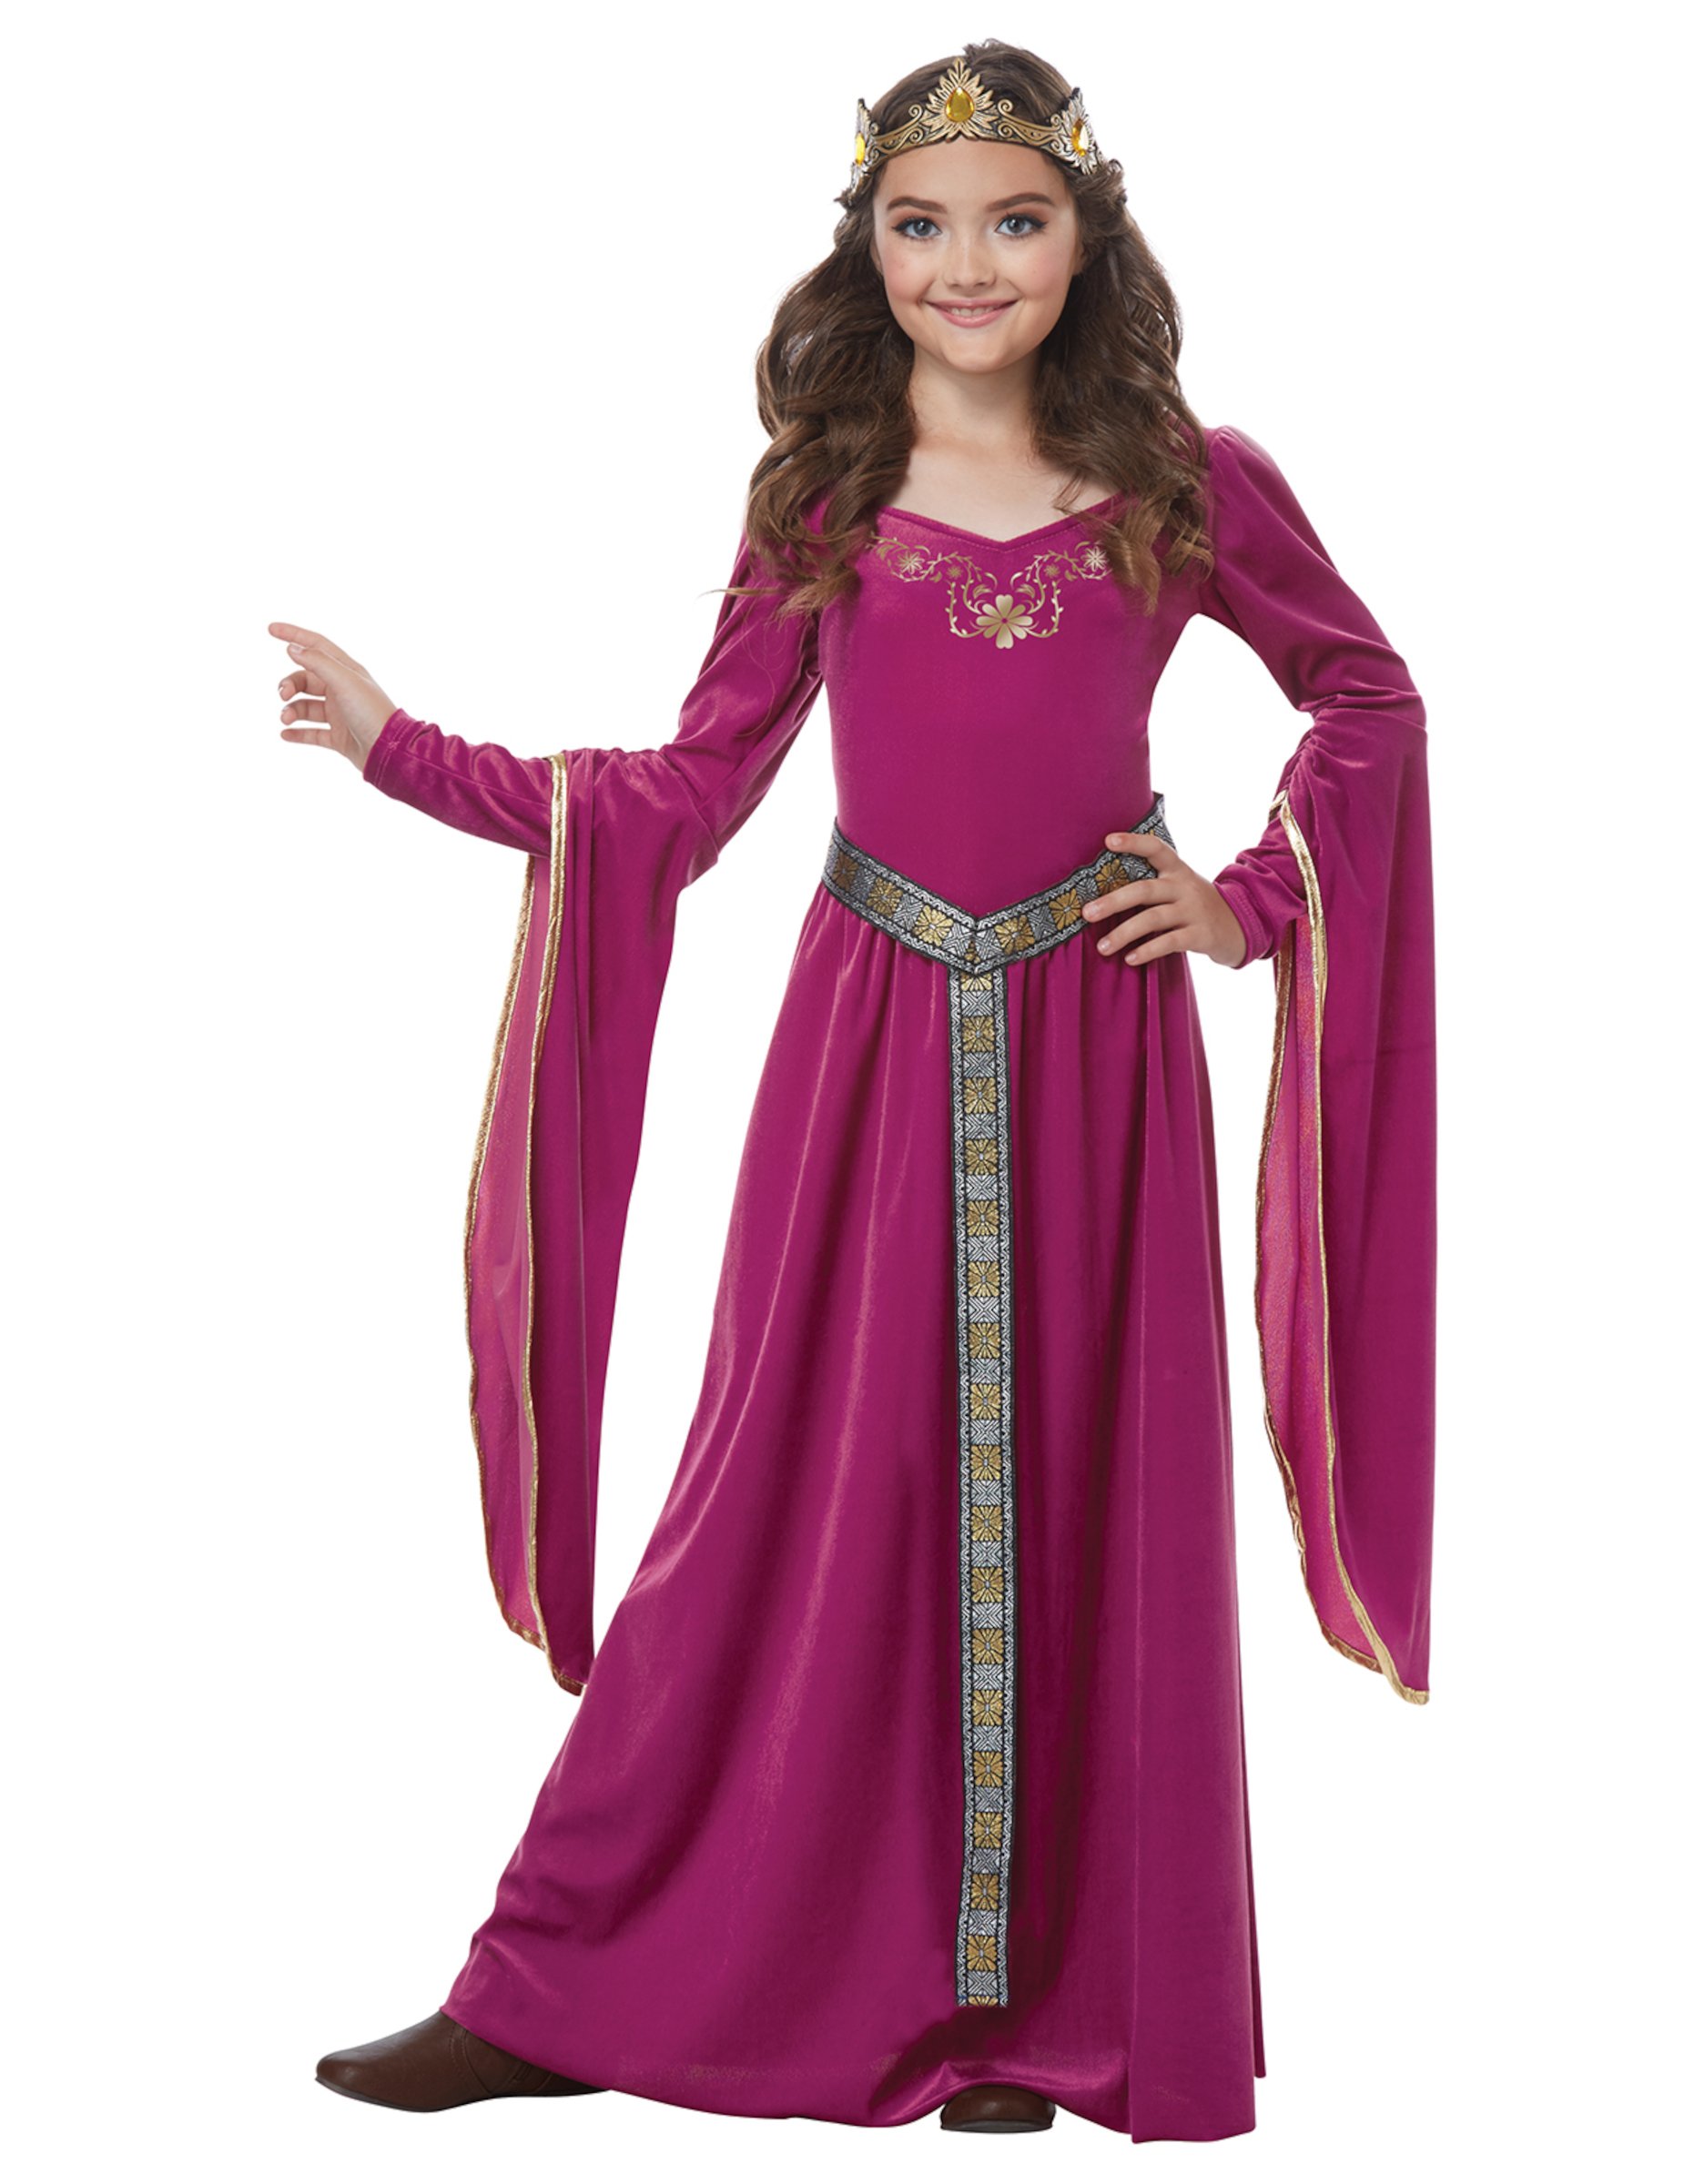 Mittelalter Prinzessin Kostüm für Kinder rosa 3-teilig von KARNEVAL-MEGASTORE